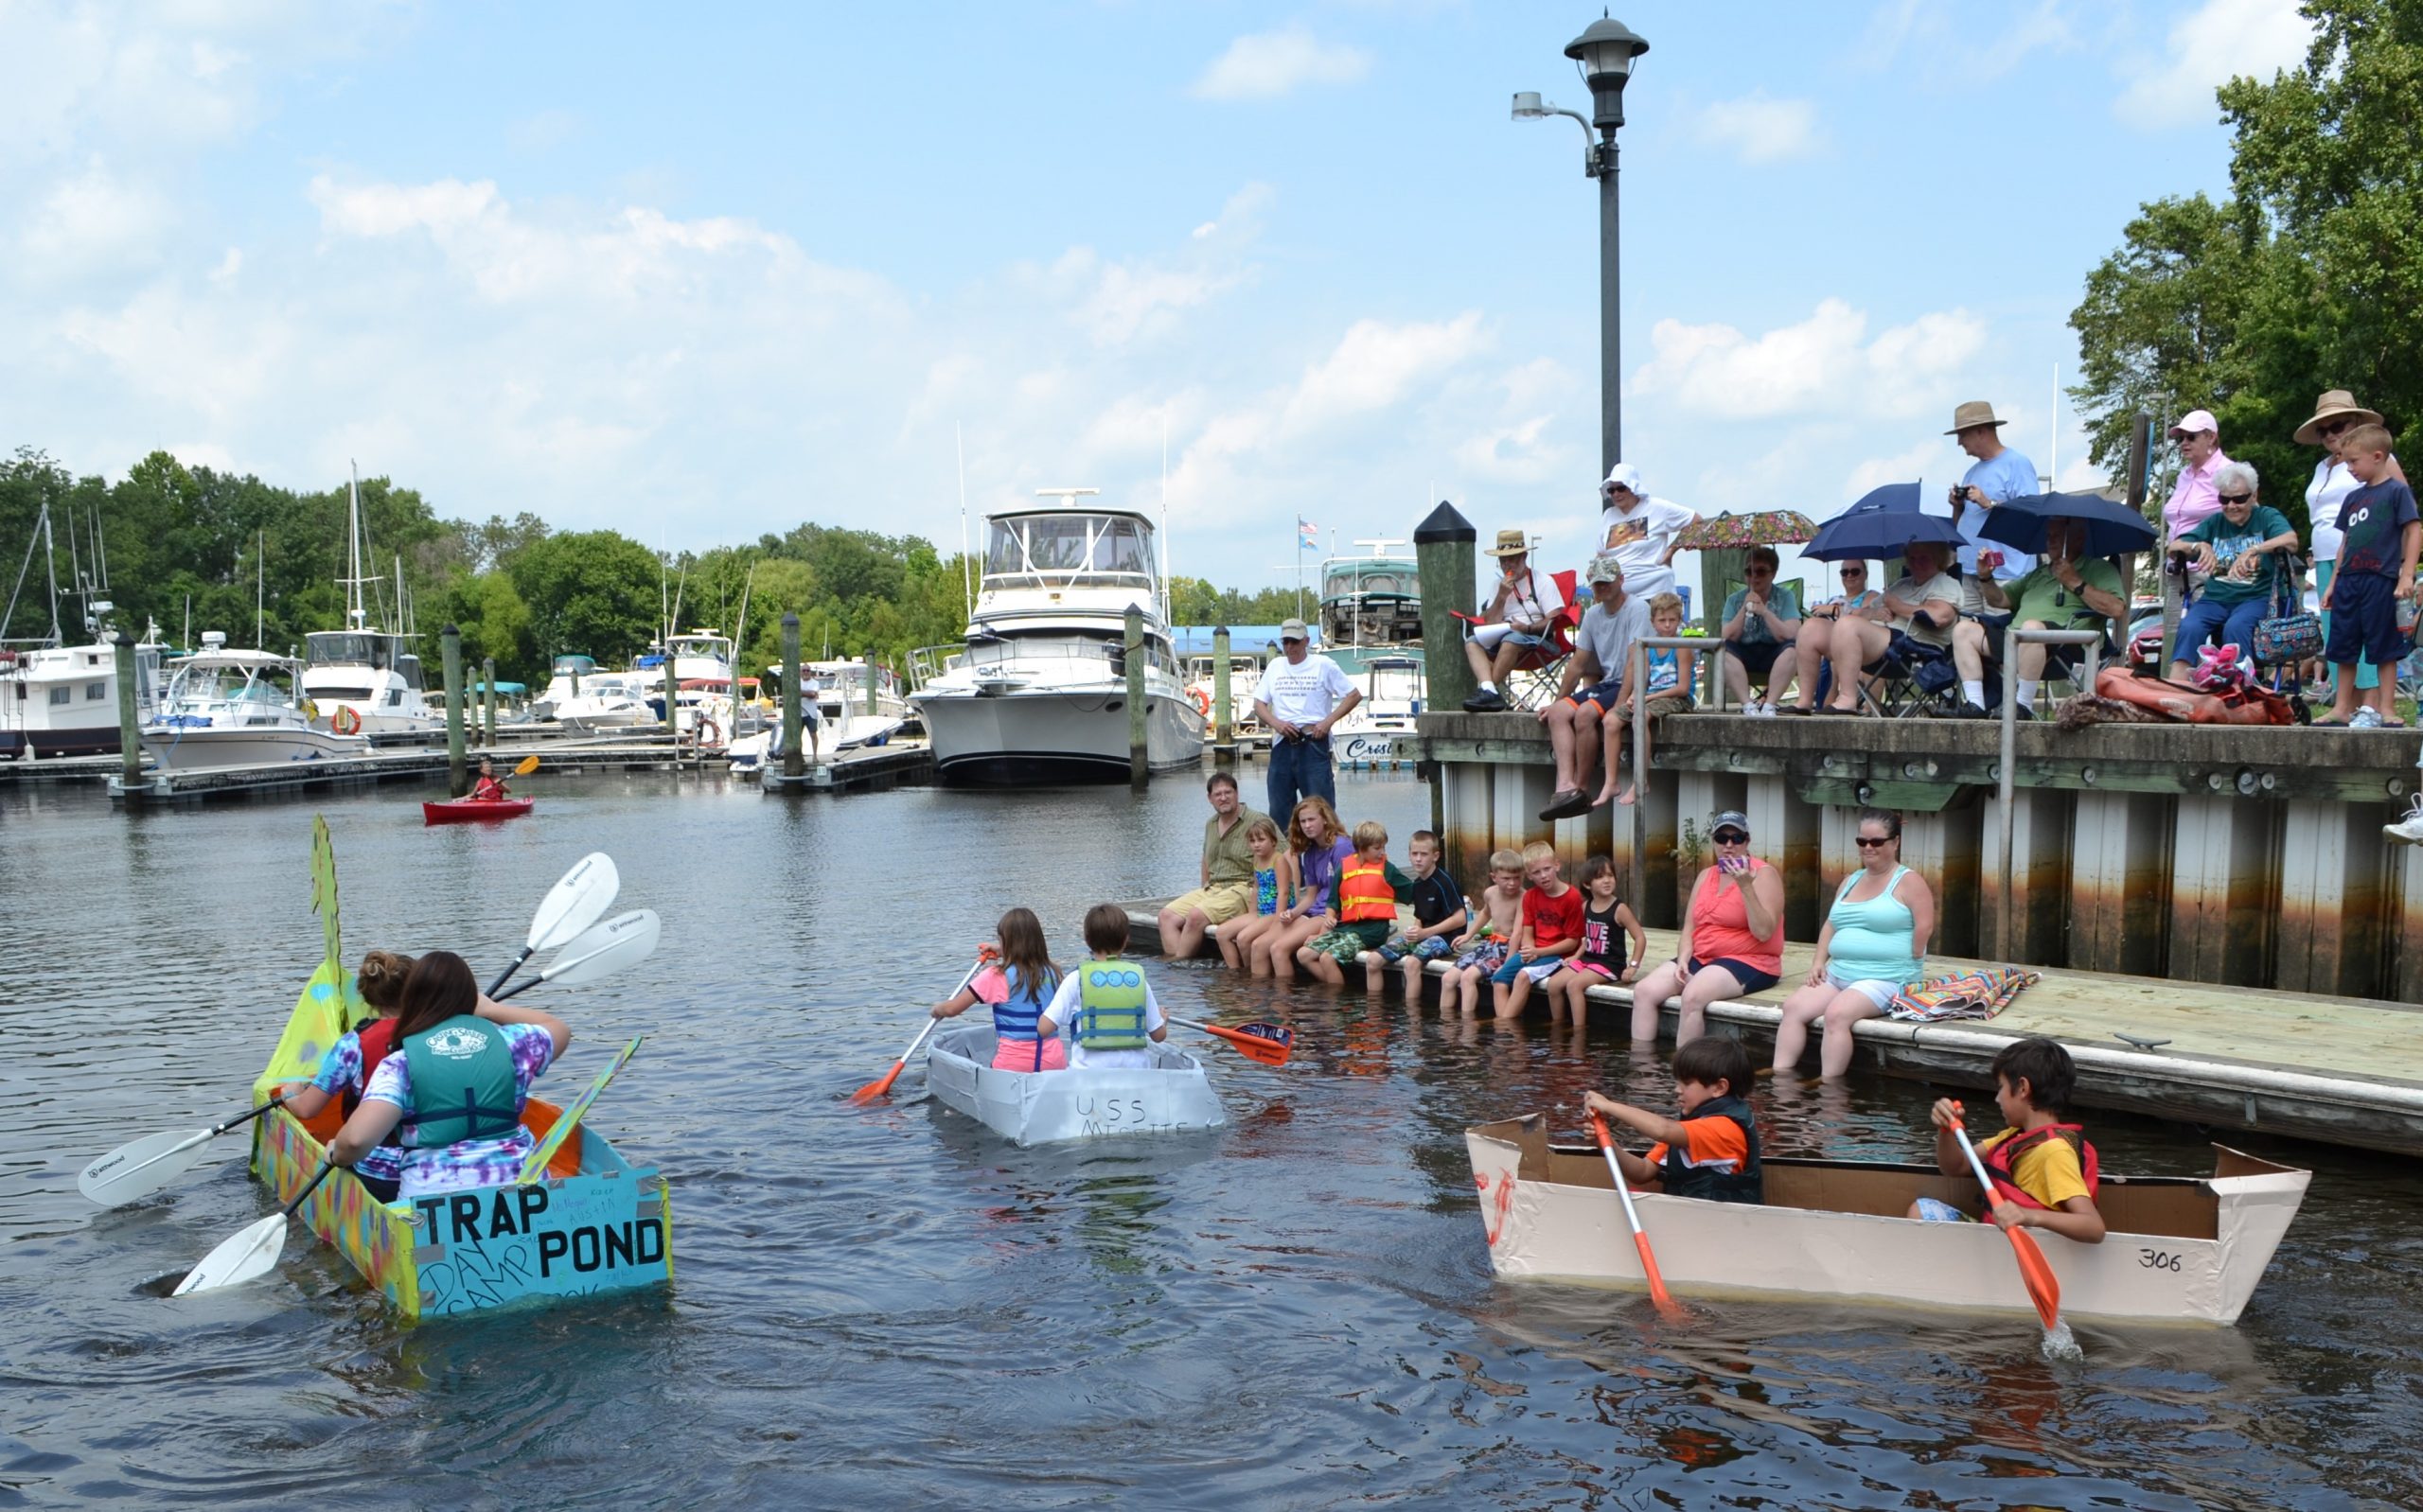 Recycled Cardboard Boat Regatta Set for Saturday, Aug. 6 on Nanticoke River - State of Delaware News - news.delaware.gov